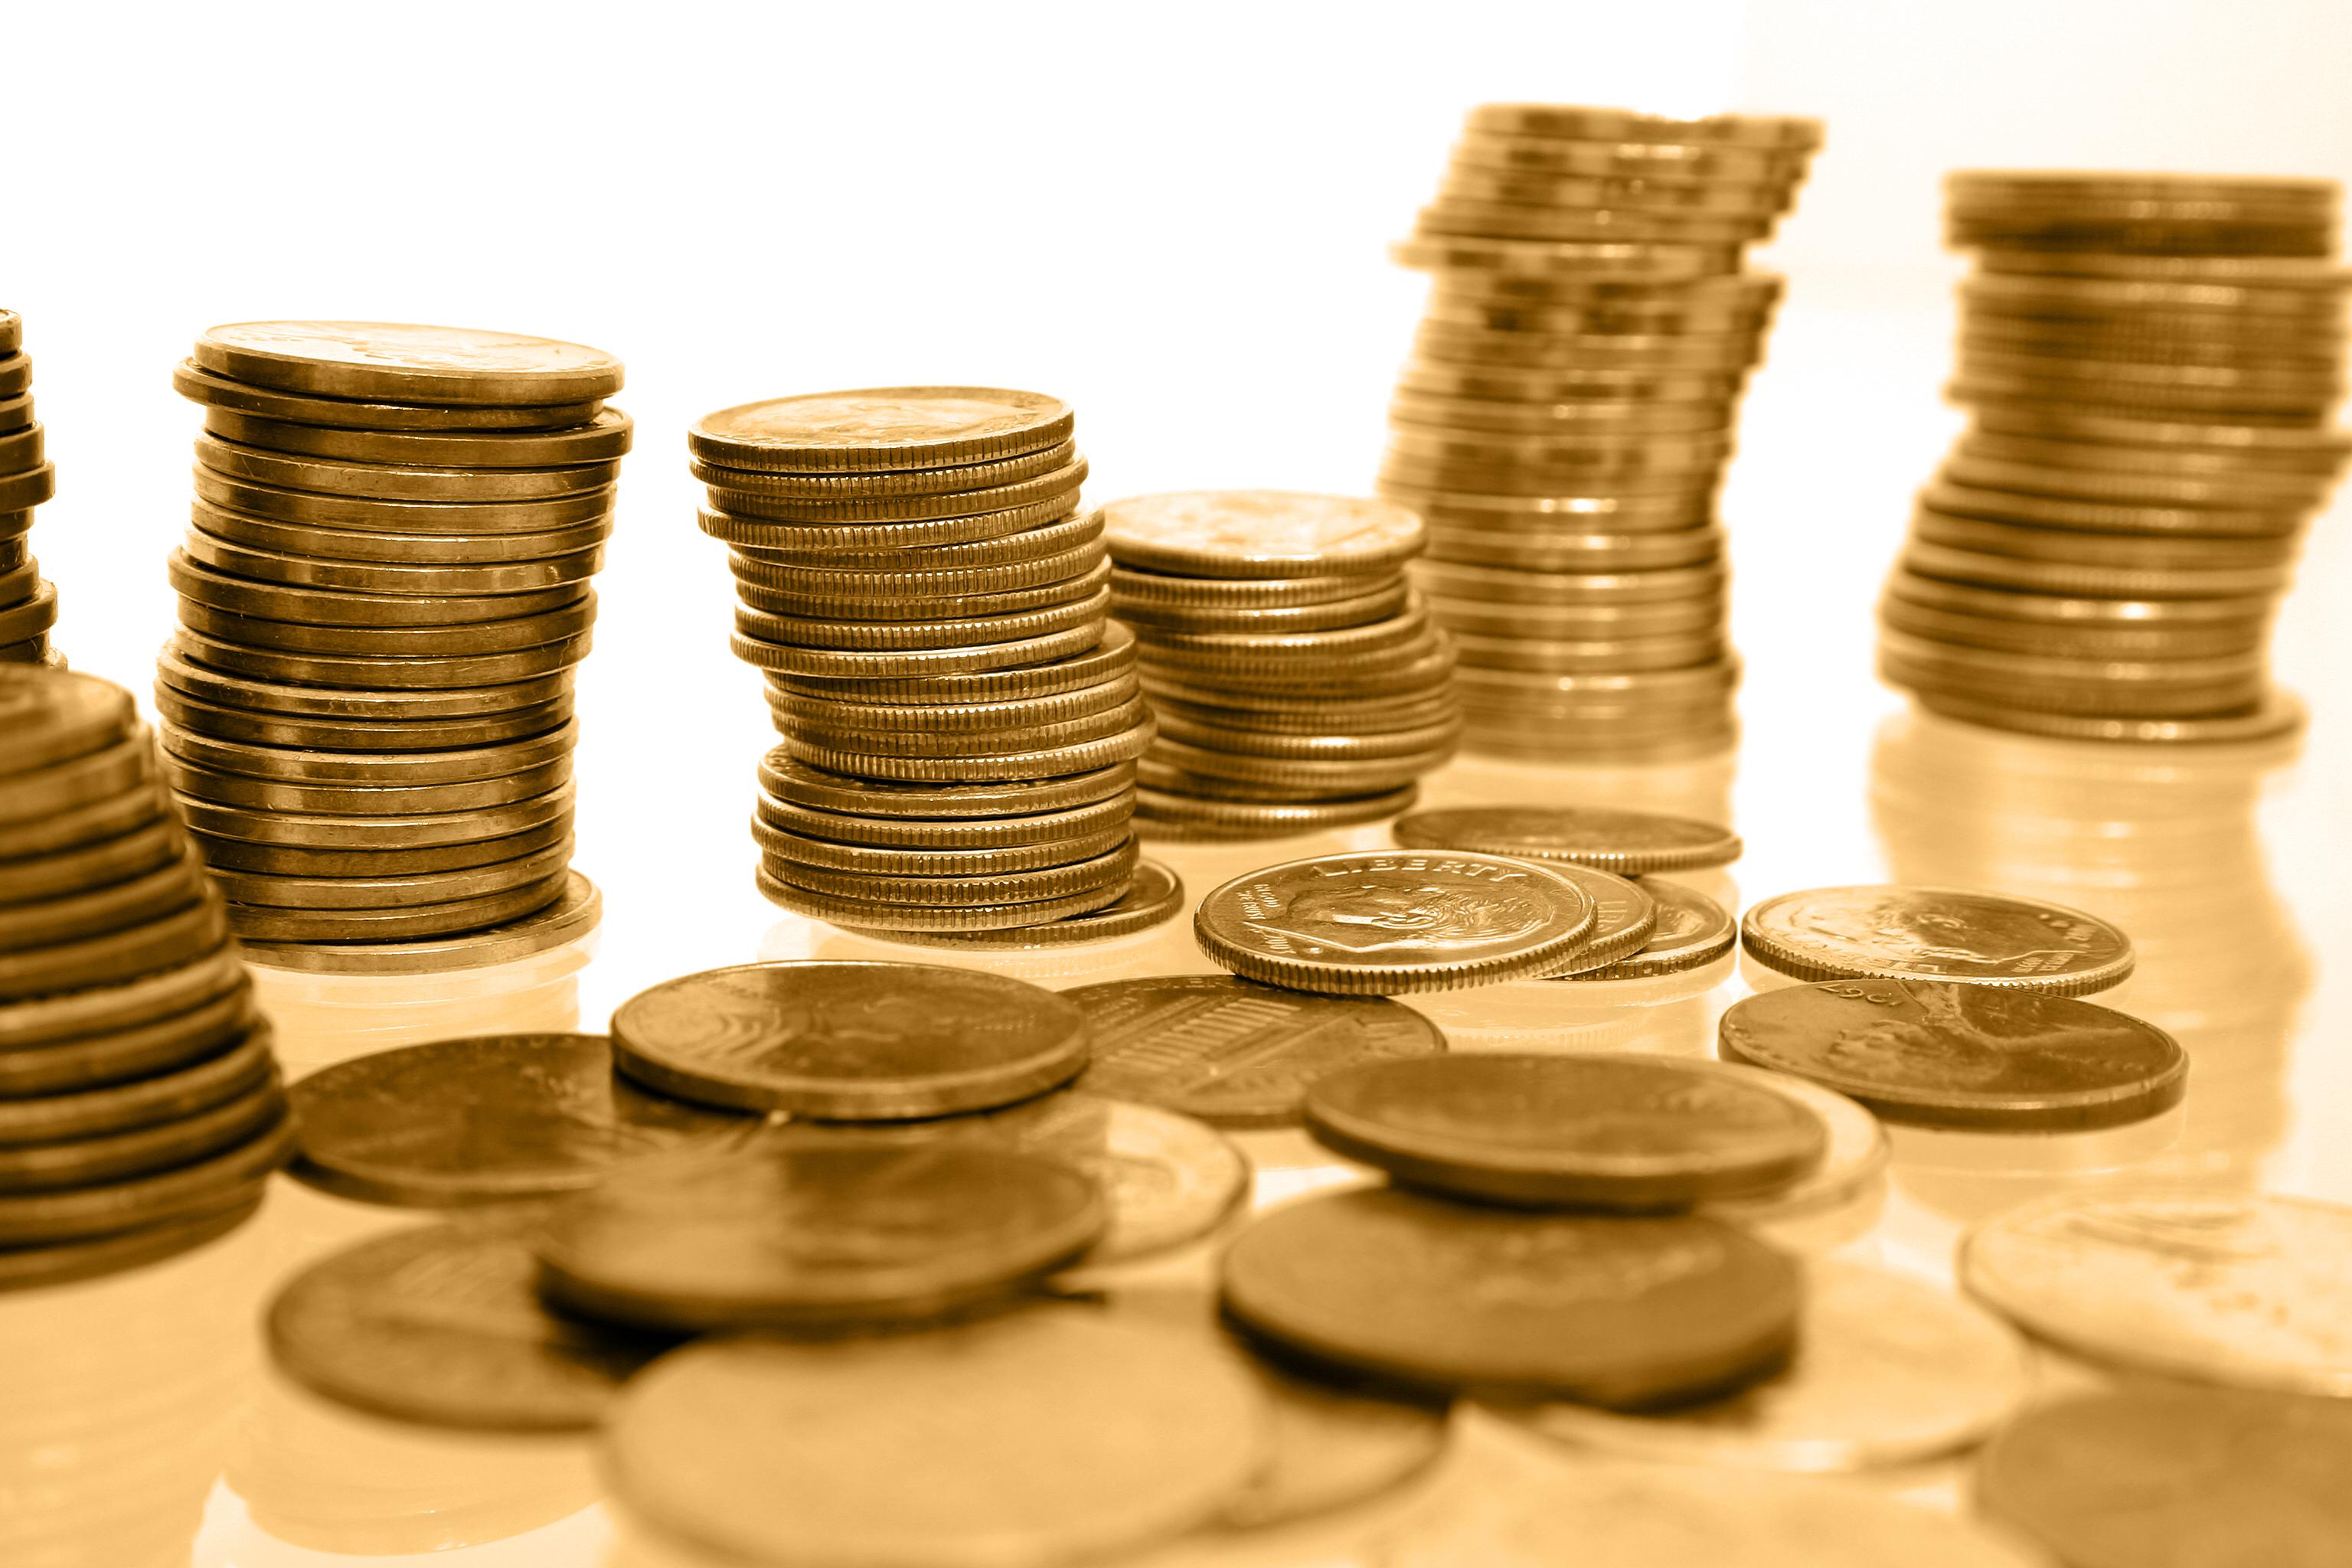 افزایش قیمت سکه طرح قدیم/ واردات بیش از 7 هزار تن فیله منجمد تيلاپيا در سال 95